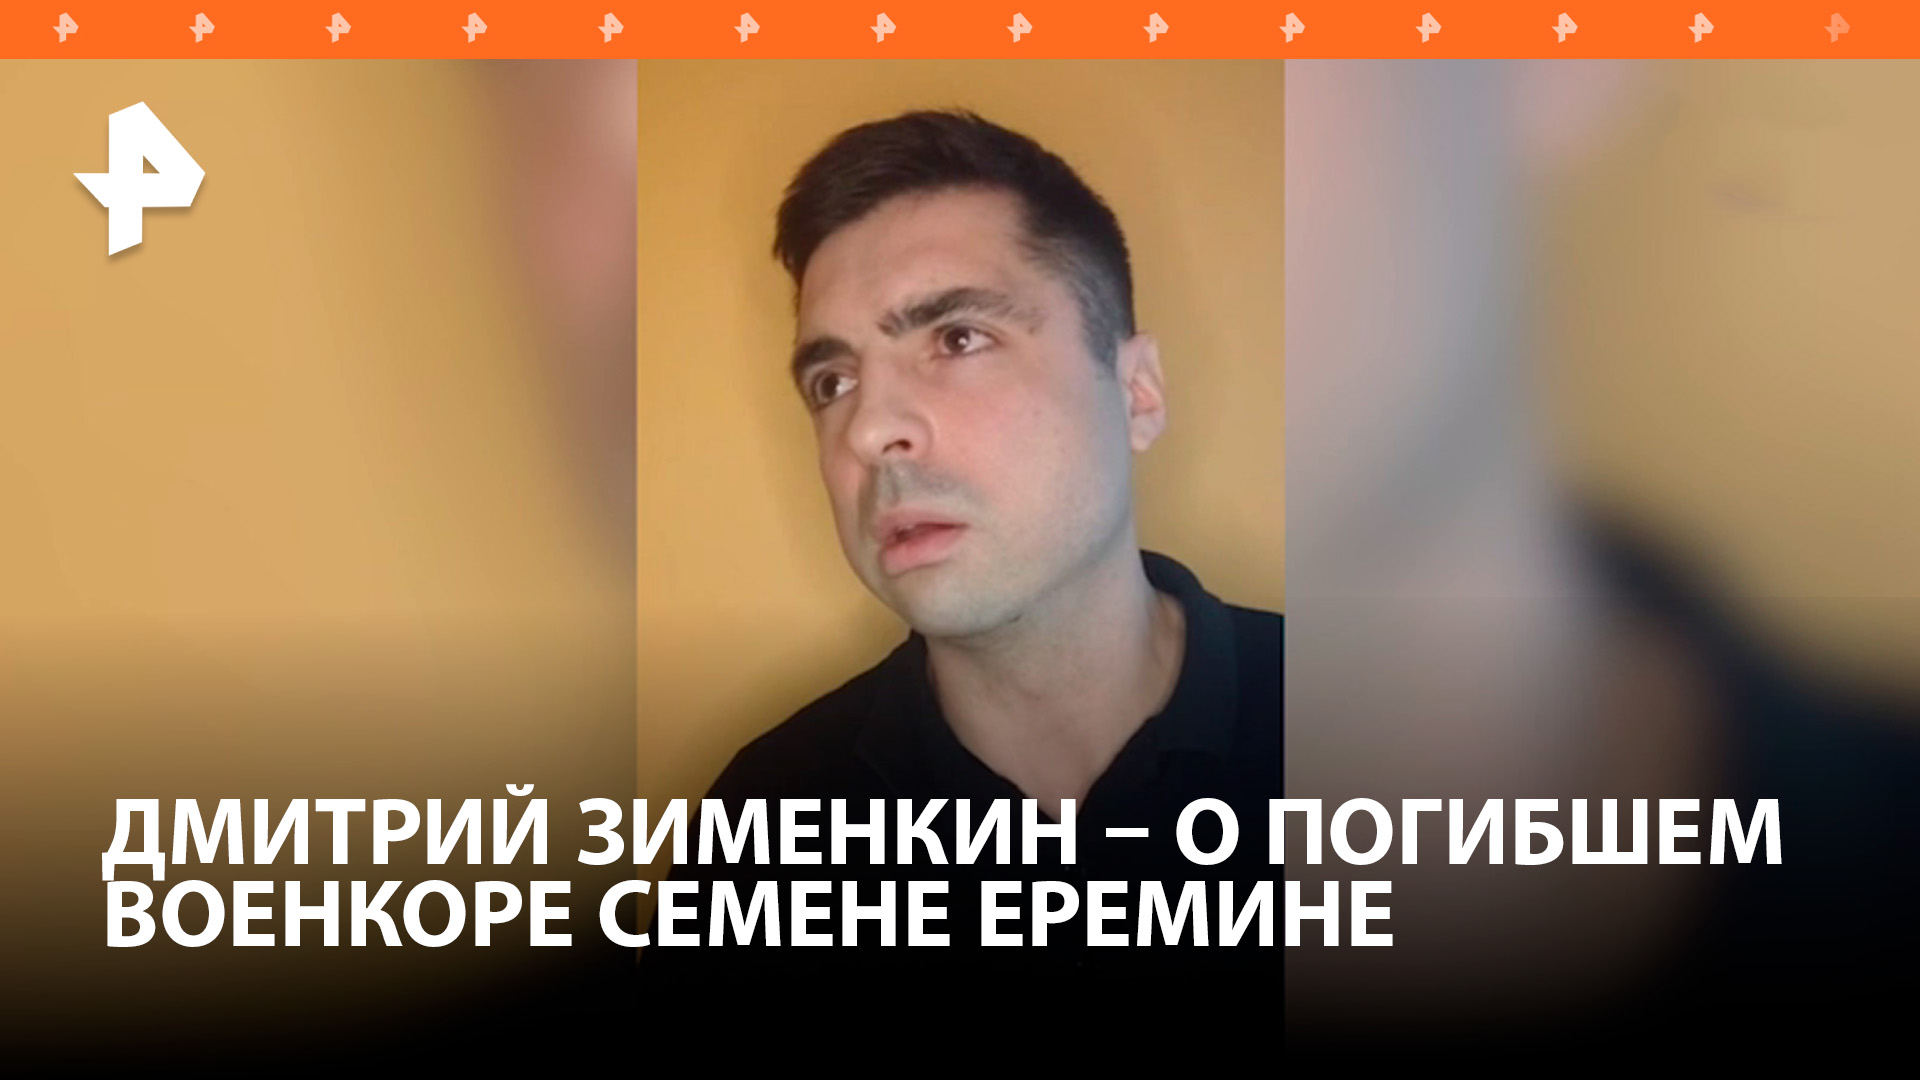 Военкор Семен Еремин был творческой личностью, рассказал корреспондент "Известий" Дмитрий Зименкин